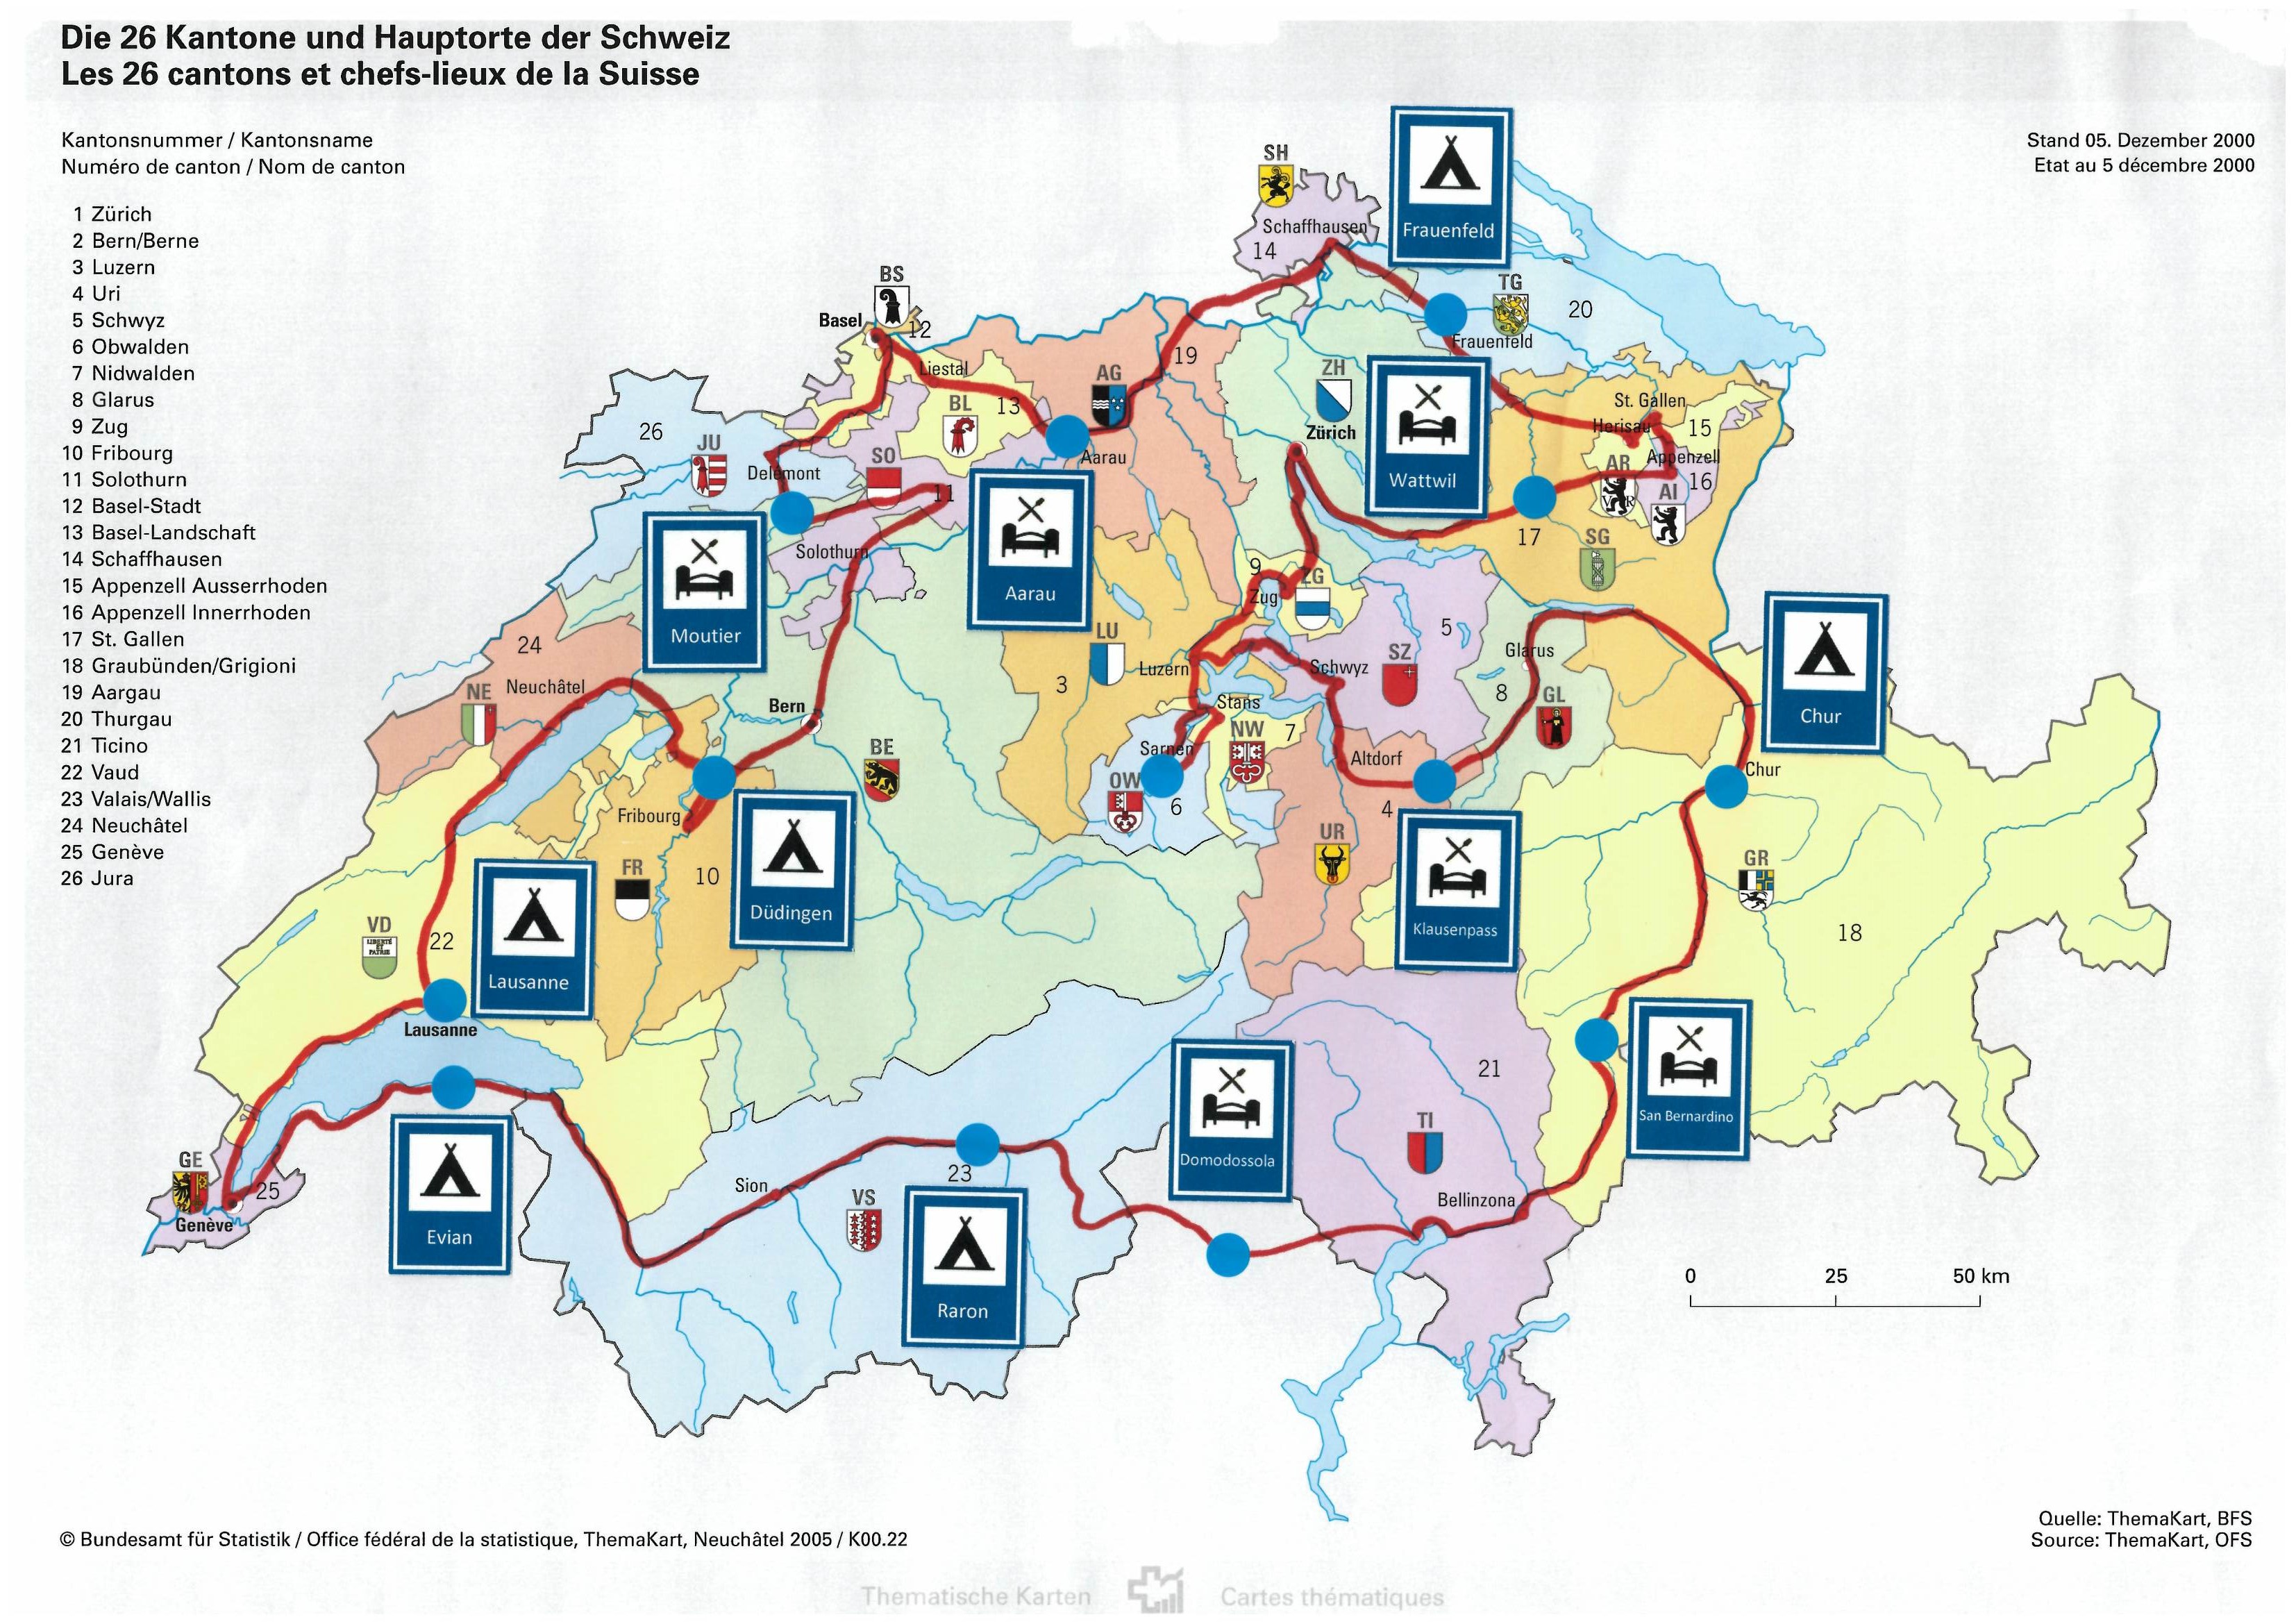 Tour de Suisse Route 2014